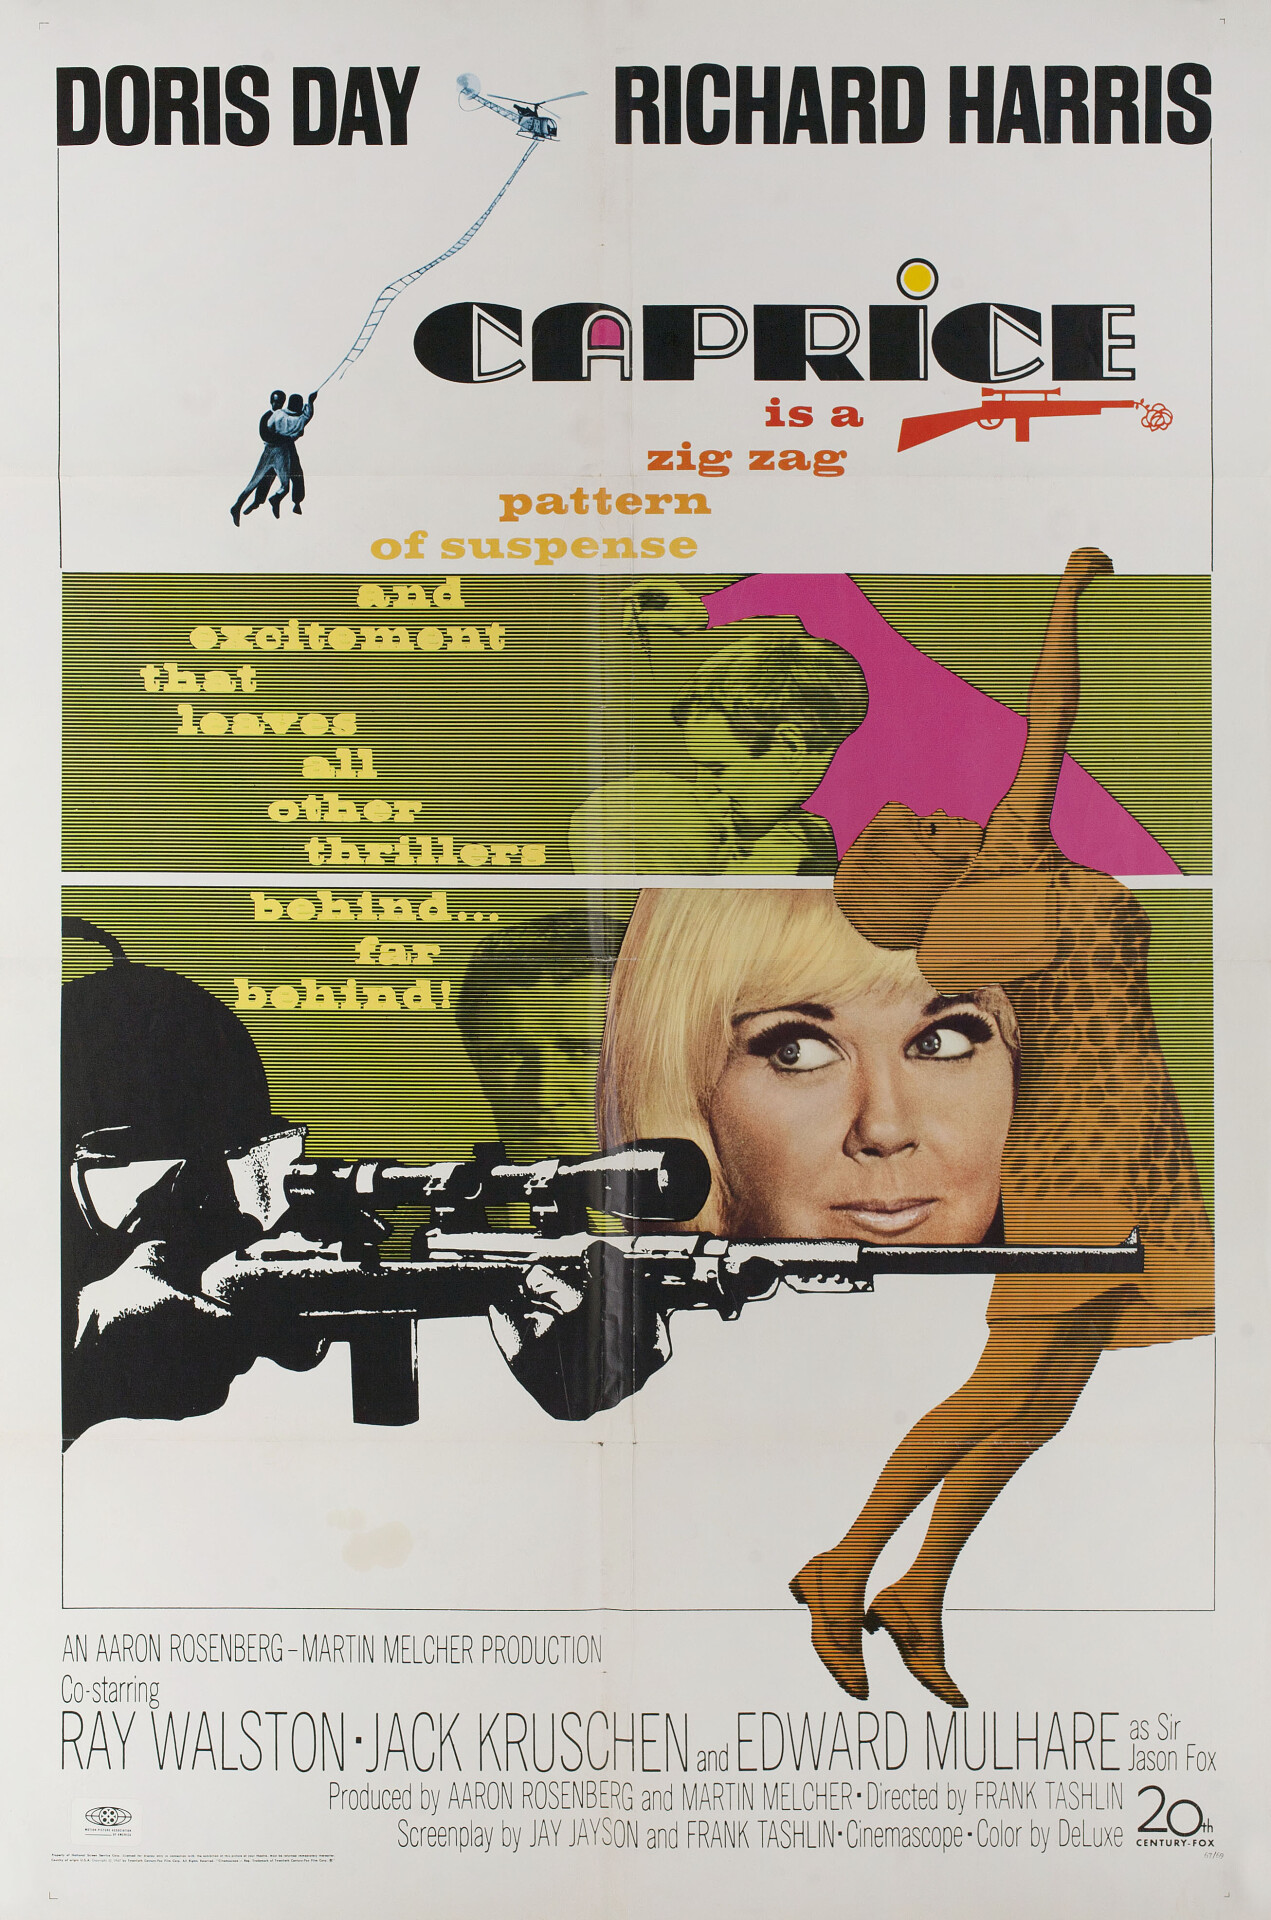 Каприз (Caprice, 1967), режиссёр Фрэнк Ташлин, американский постер к фильму (графический дизайн, 1967 год)